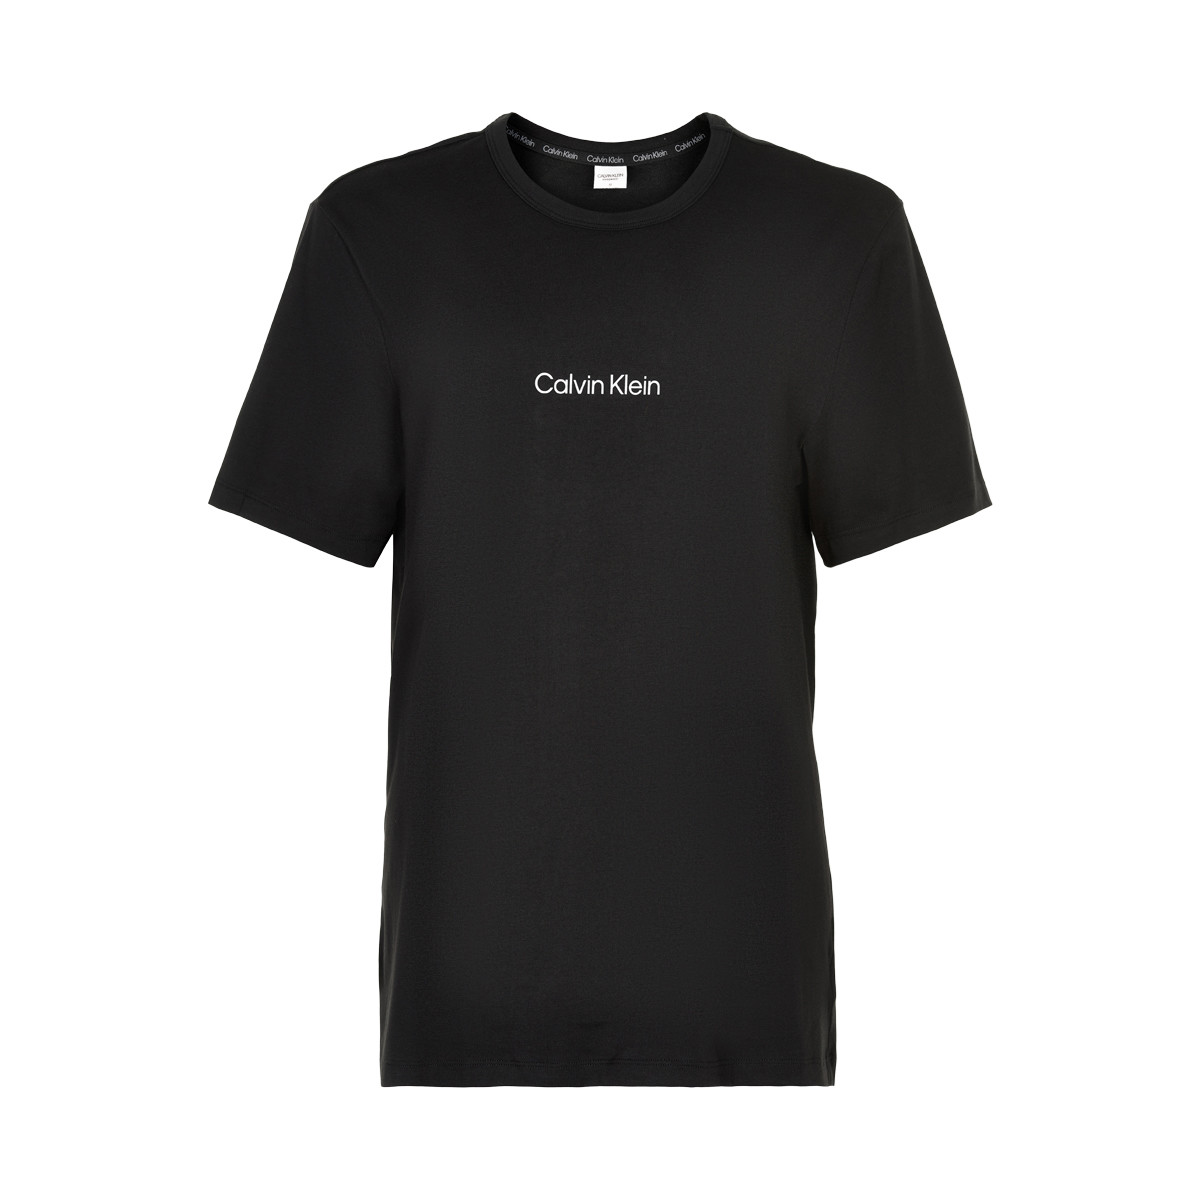 Se Calvin Klein T-shirt, Farve: Sort, Størrelse: S, Dame hos Netlingeri.dk